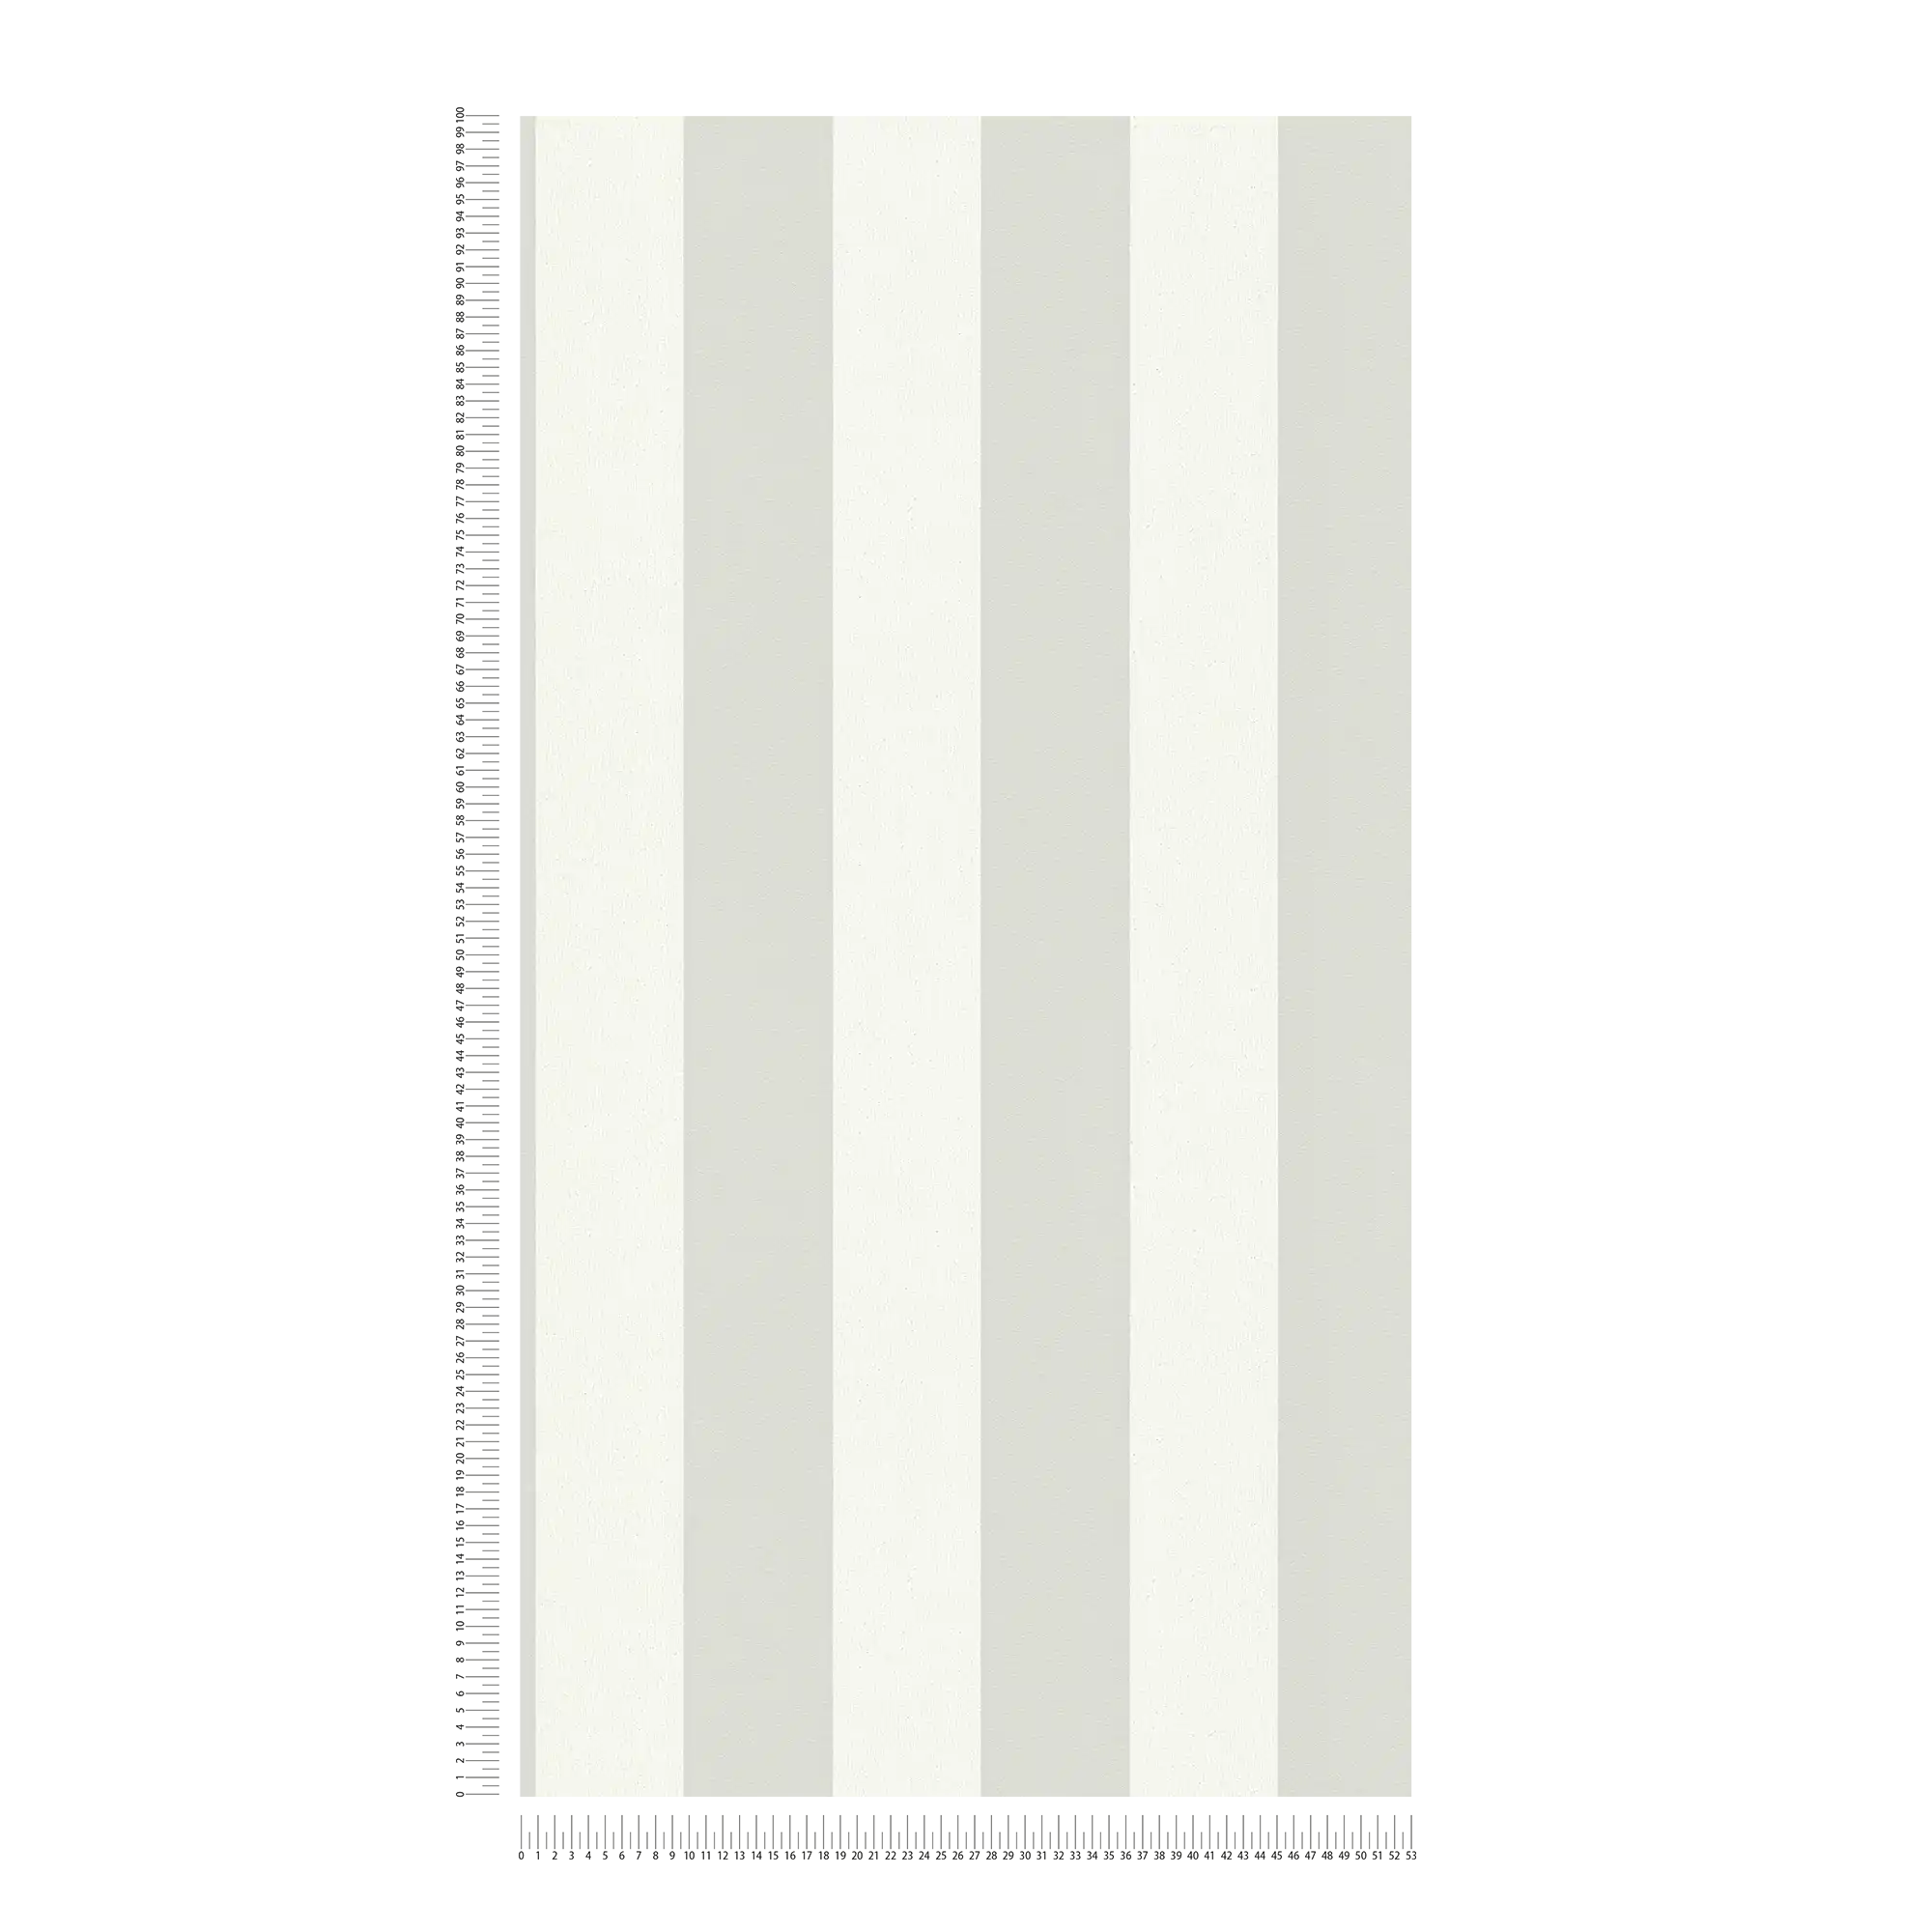             Streifen Tapete mit Strukturmuster, Blockstreifen Grau & Weiß
        